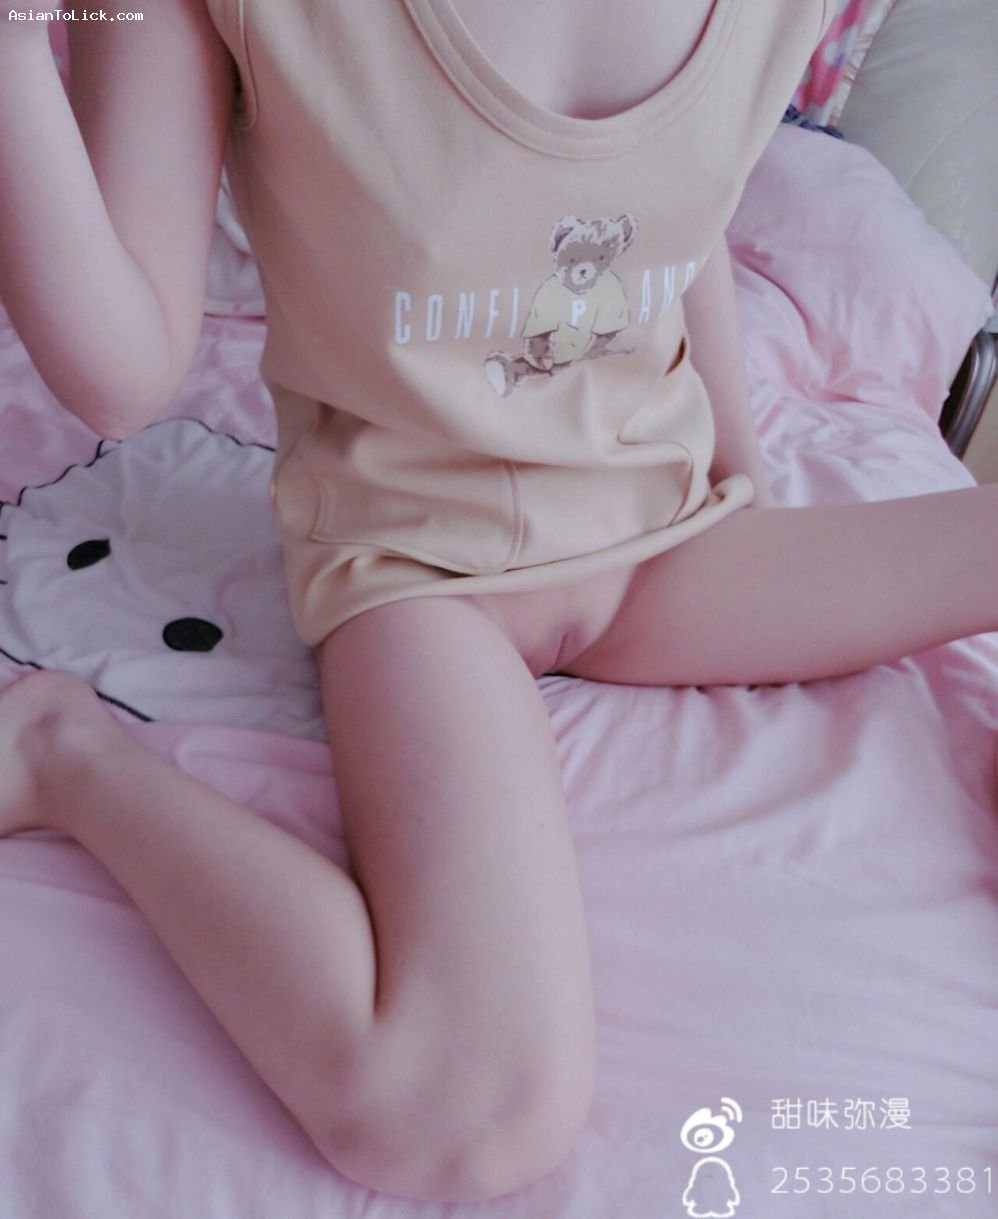 萌白酱(甜味弥漫) – 小熊连衣裙 – Cute girl with bear dress